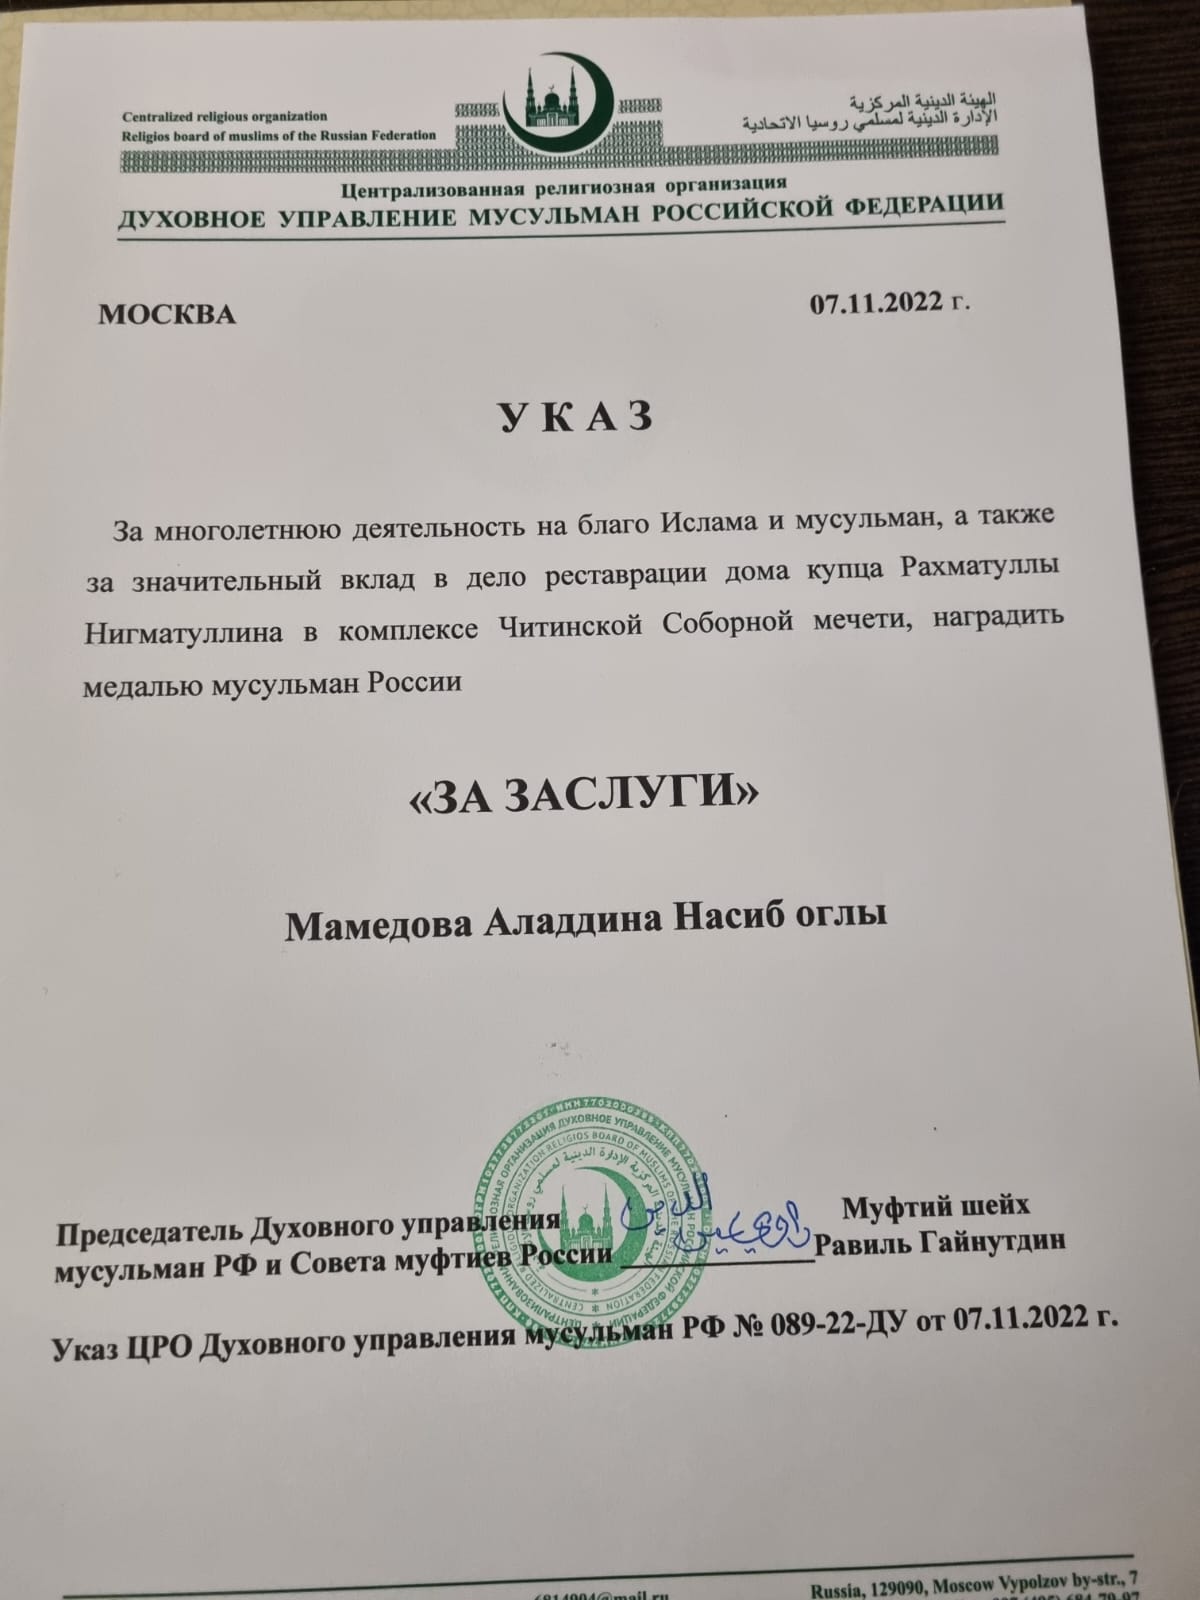 Аладдин Мамедов награжден медалью мусульман России "За заслуги"